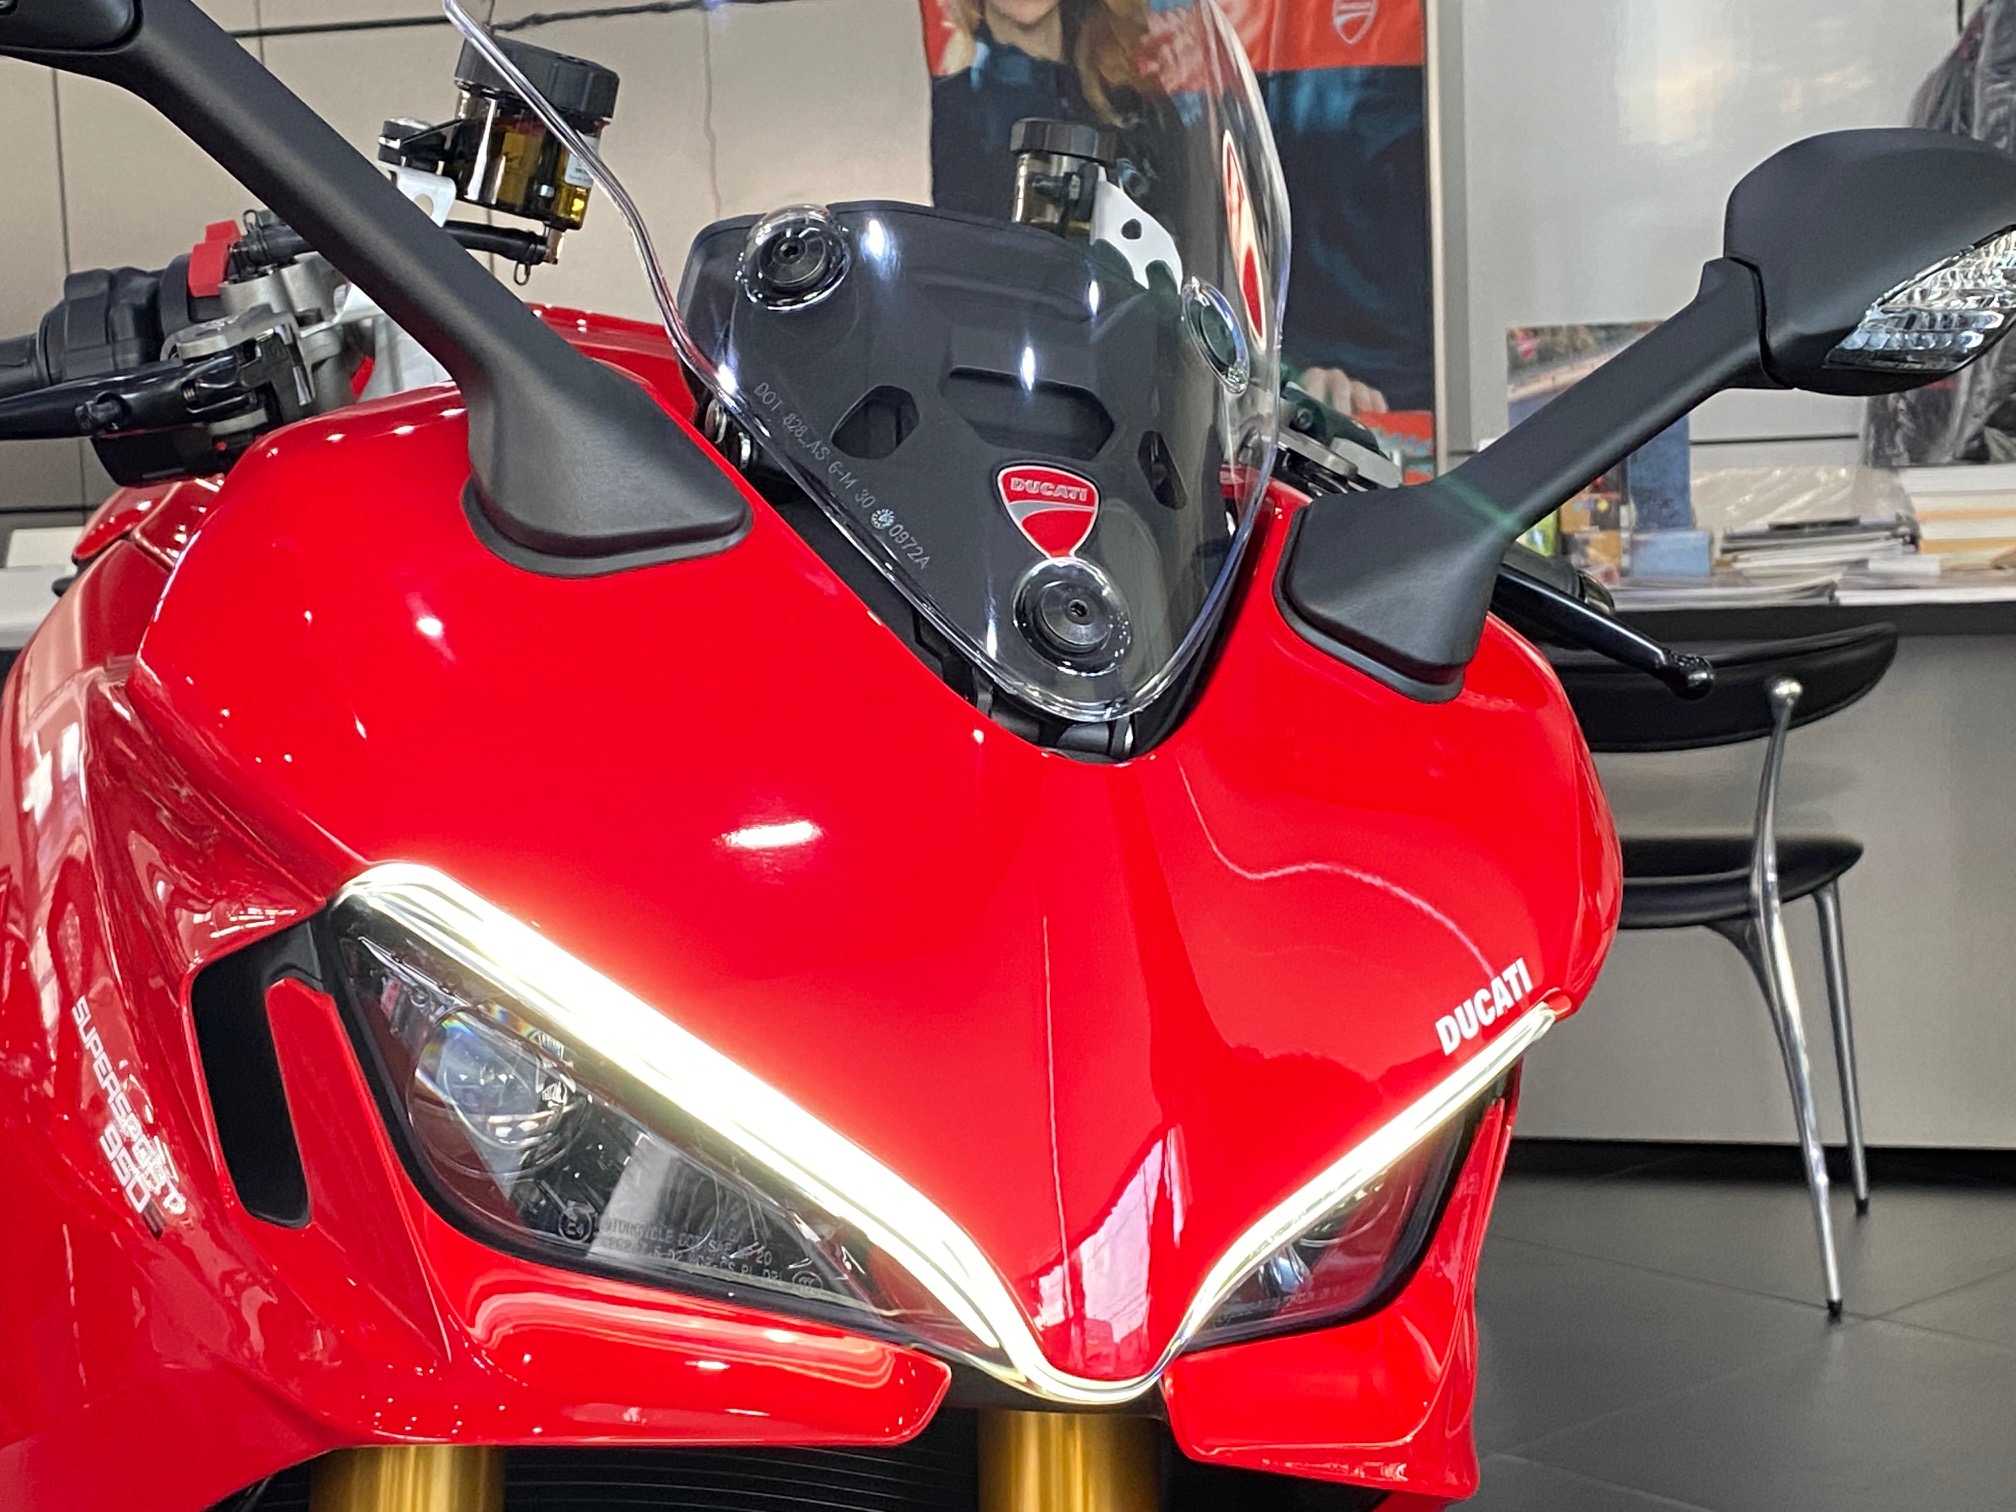 新型スーパースポーツ950S入りました！ – Ducati Saitama